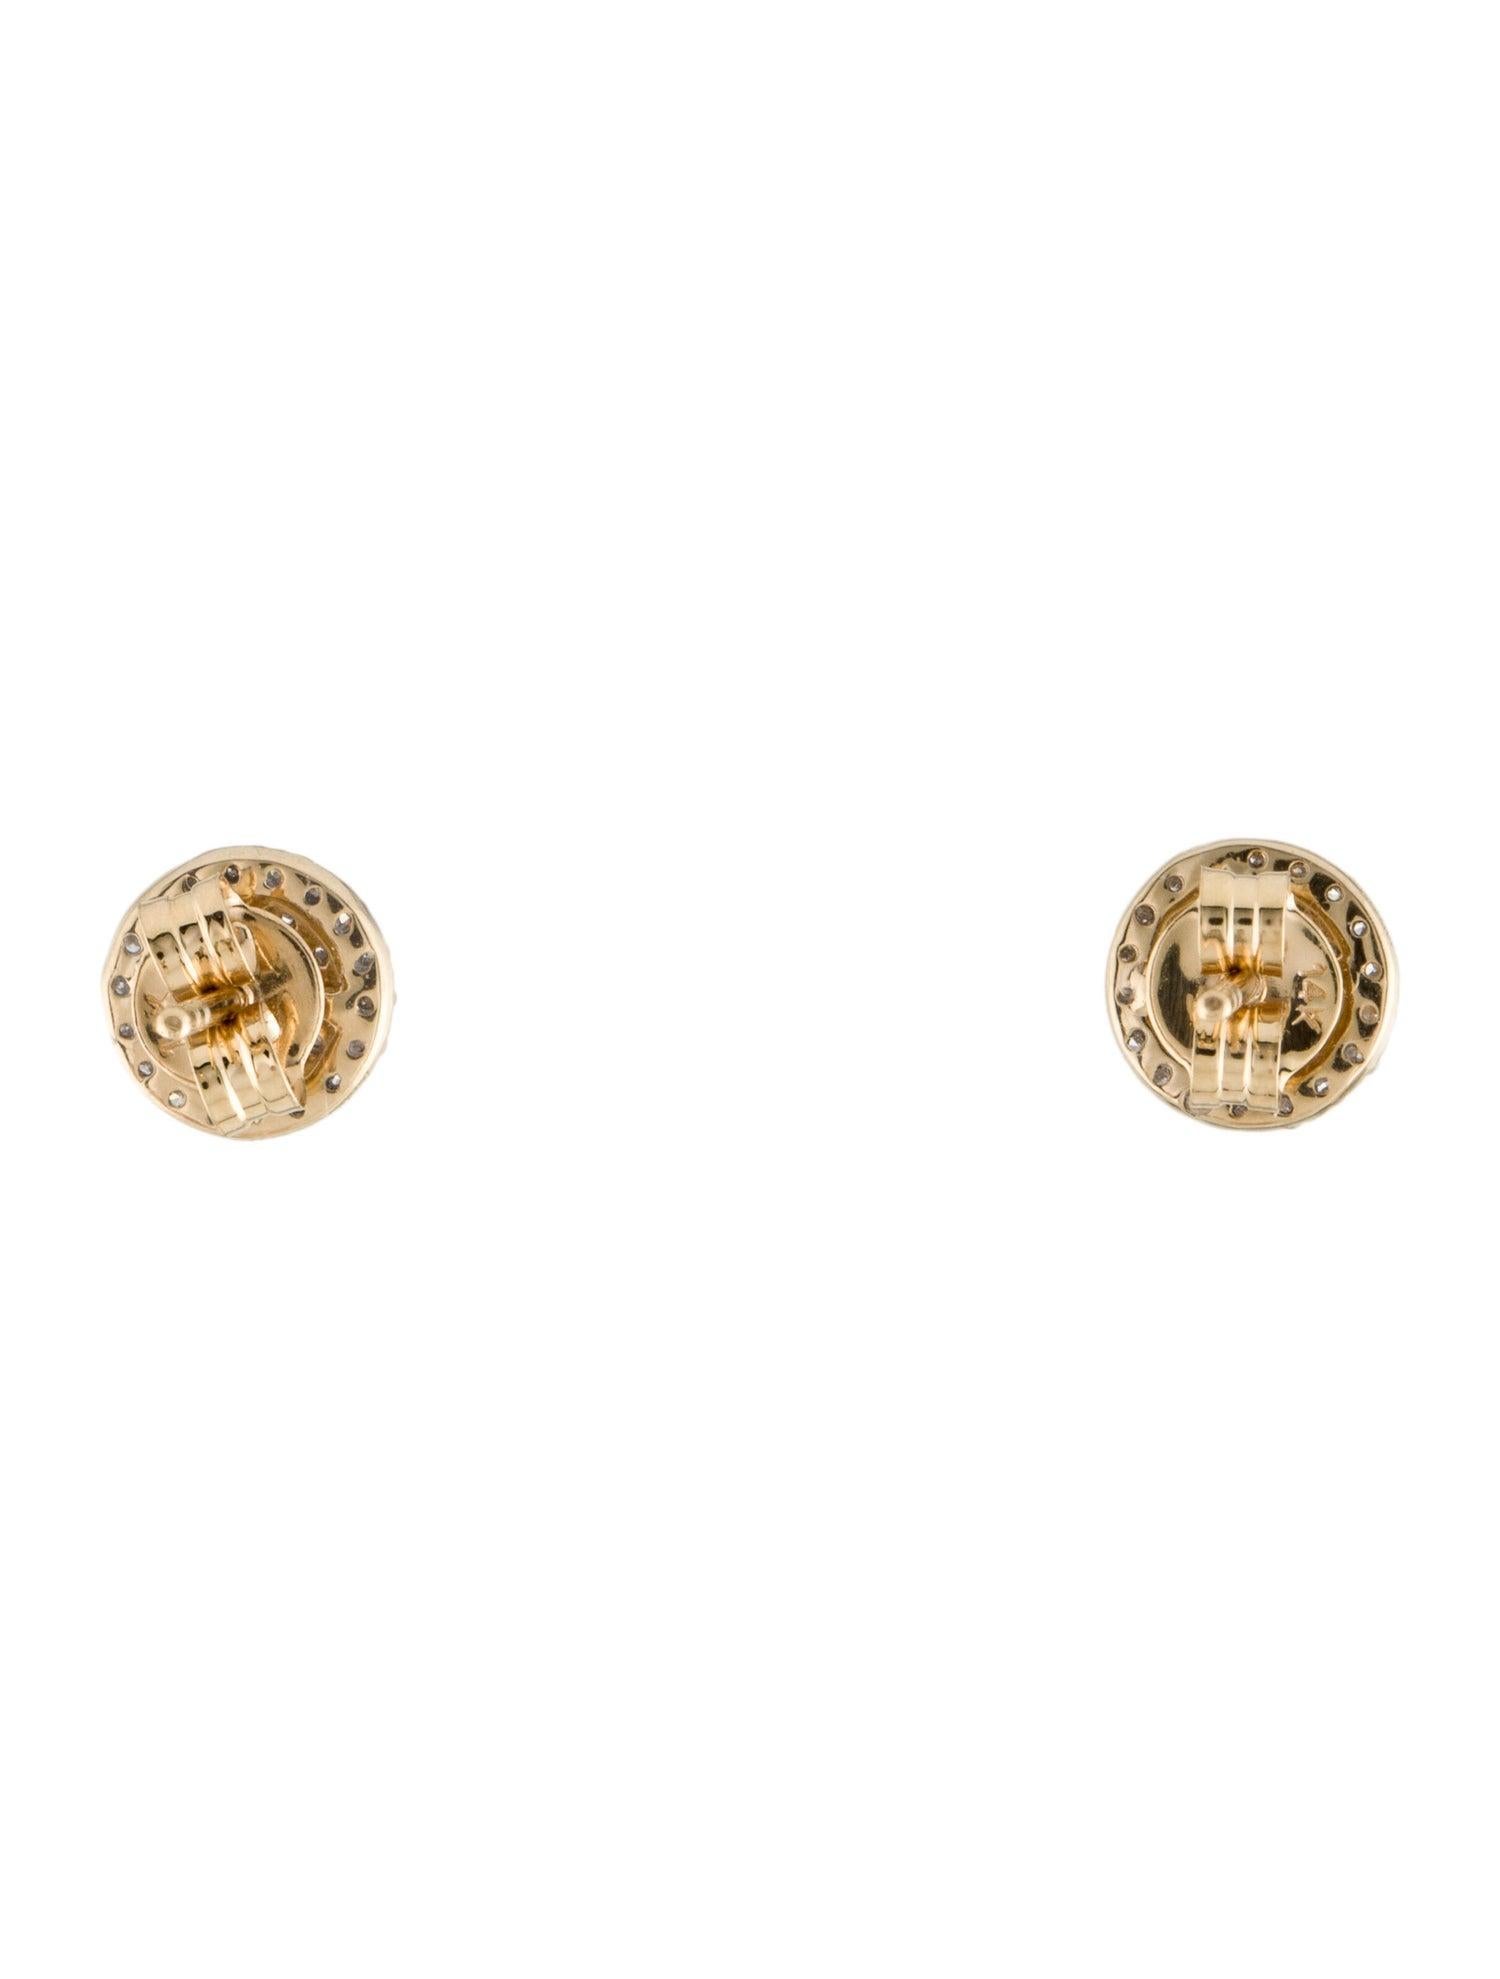 Women's 14K Tourmaline & Diamond Stud Earrings - Luxurious & Elegant Gemstone Jewelry For Sale